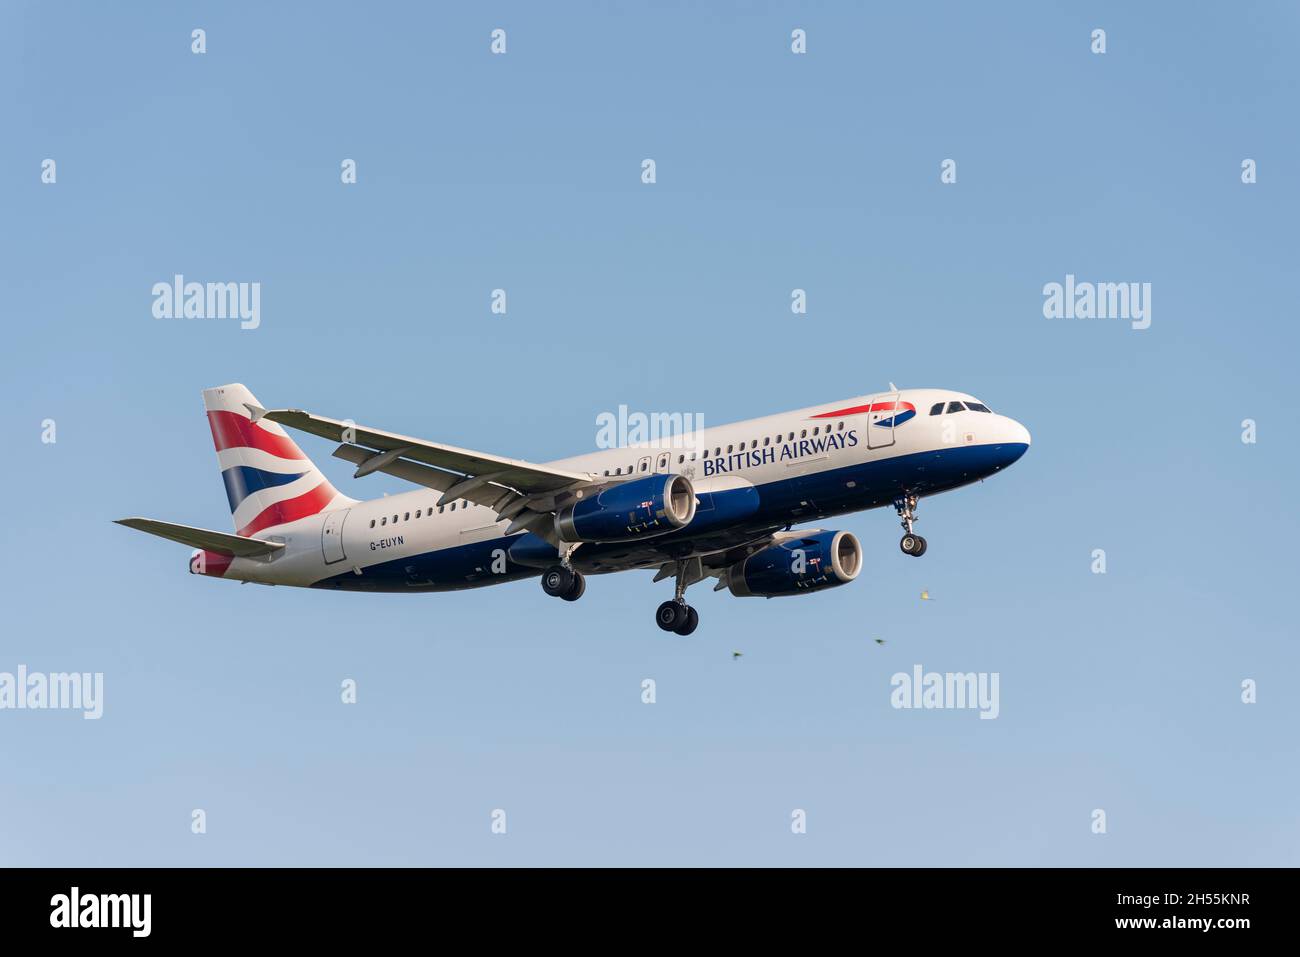 British Airways Airbus A320 232 aereo aereo aereo aereo aereo jet G-EUYN sull'avvicinamento a terra all'aeroporto di Londra Heathrow, Regno Unito. Foto Stock